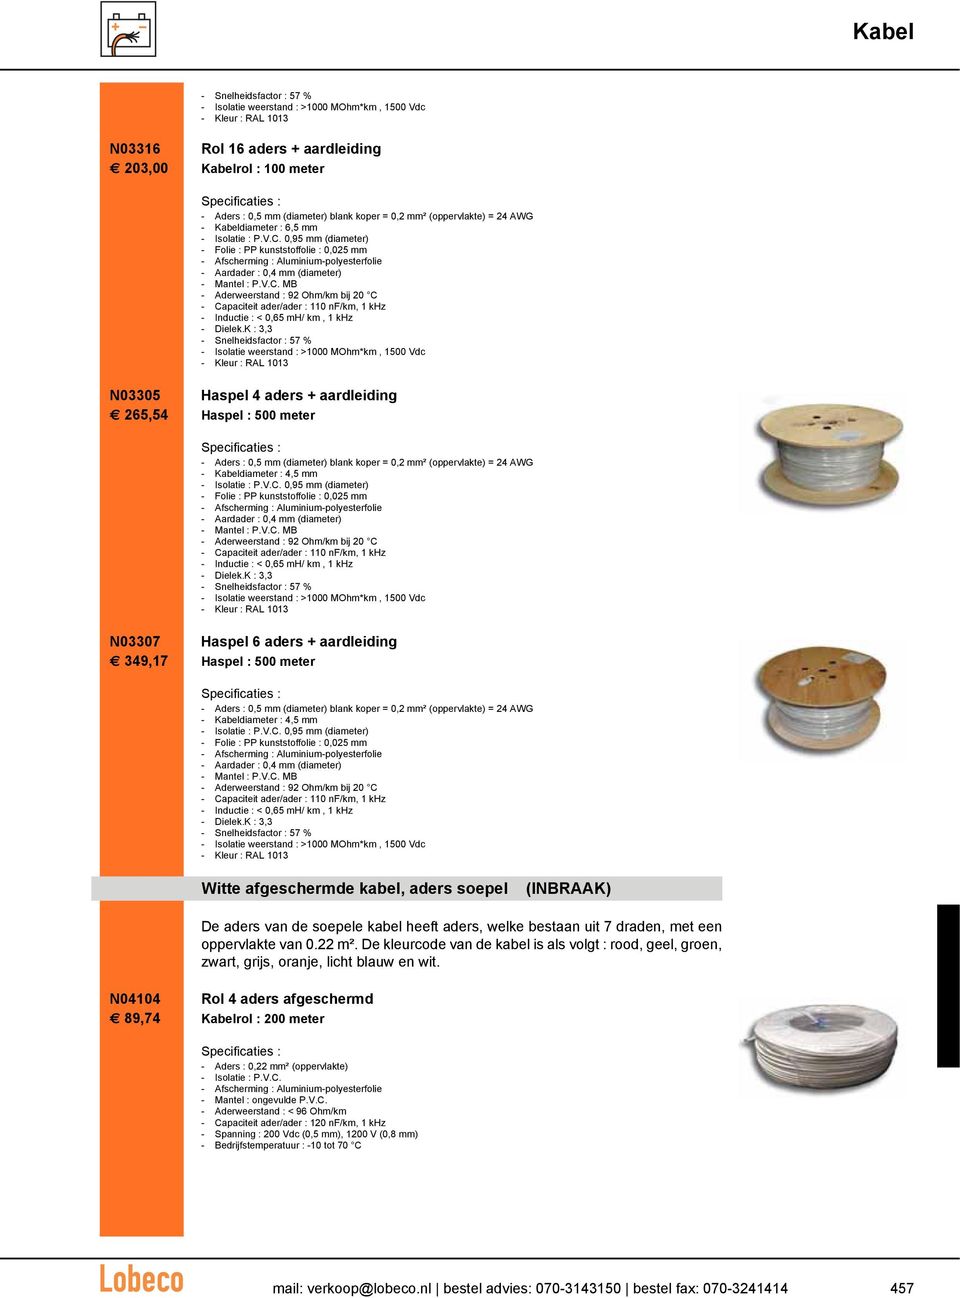 0,95 mm (diameter) - Folie : PP kunststoffolie : 0,025 mm - Afscherming : Aluminium-polyesterfolie - Aardader : 0,4 mm (diameter) - Aderweerstand : 92 Ohm/km bij 20 C - Capaciteit ader/ader : 110